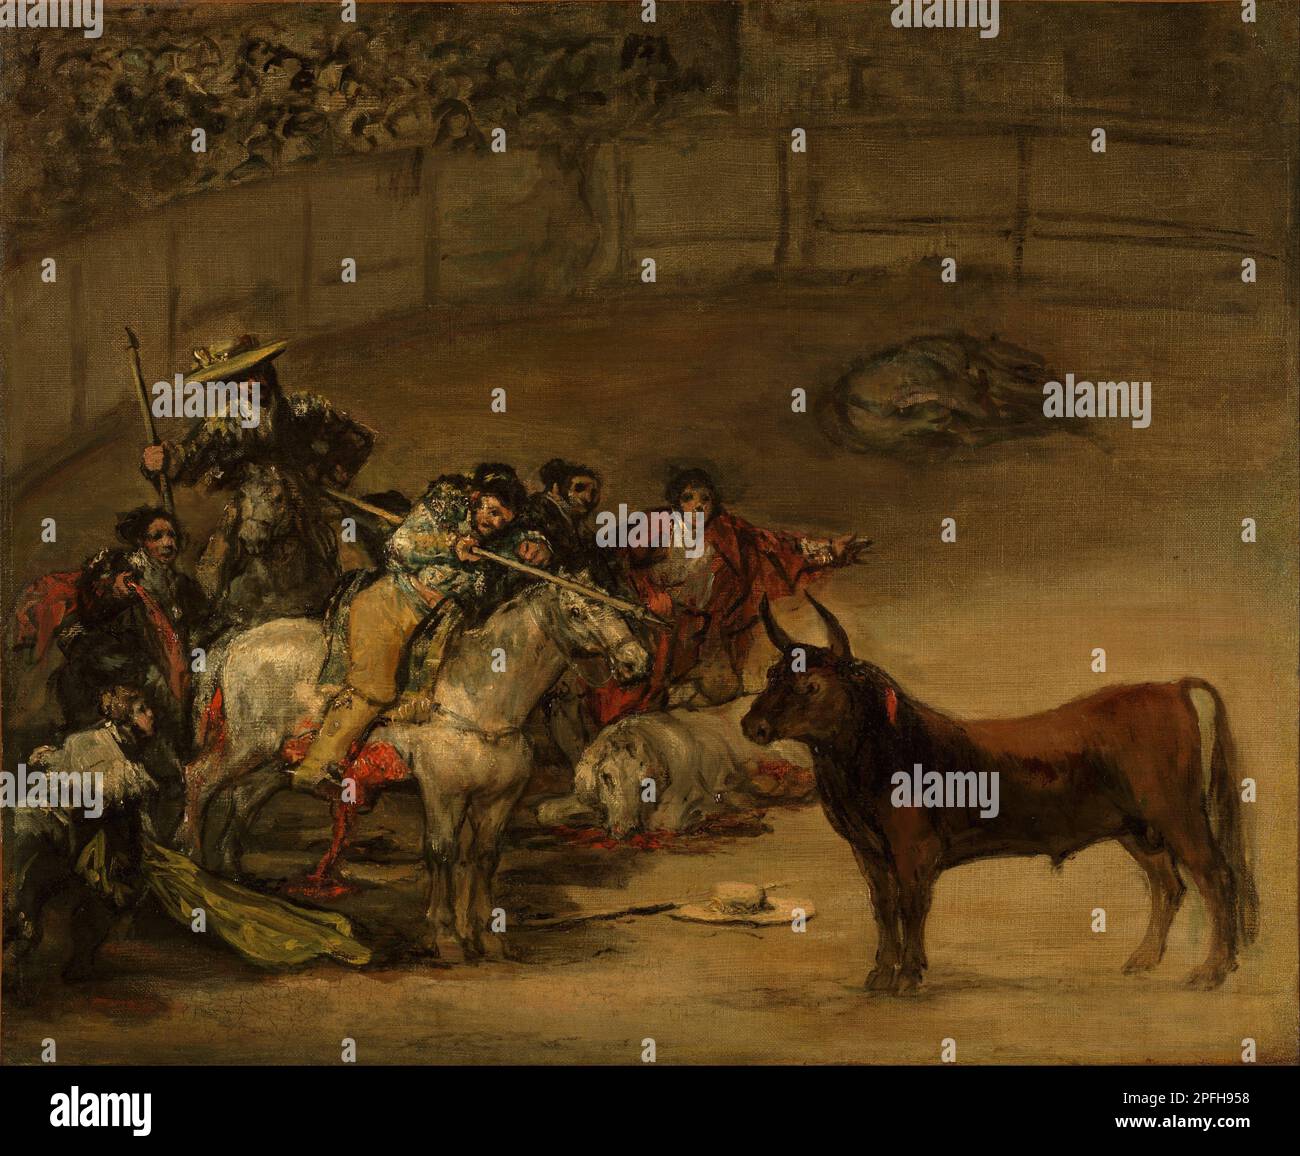 Bullfight, Suerte de Varas 1824 by Francisco de Goya y Lucientes Stock Photo